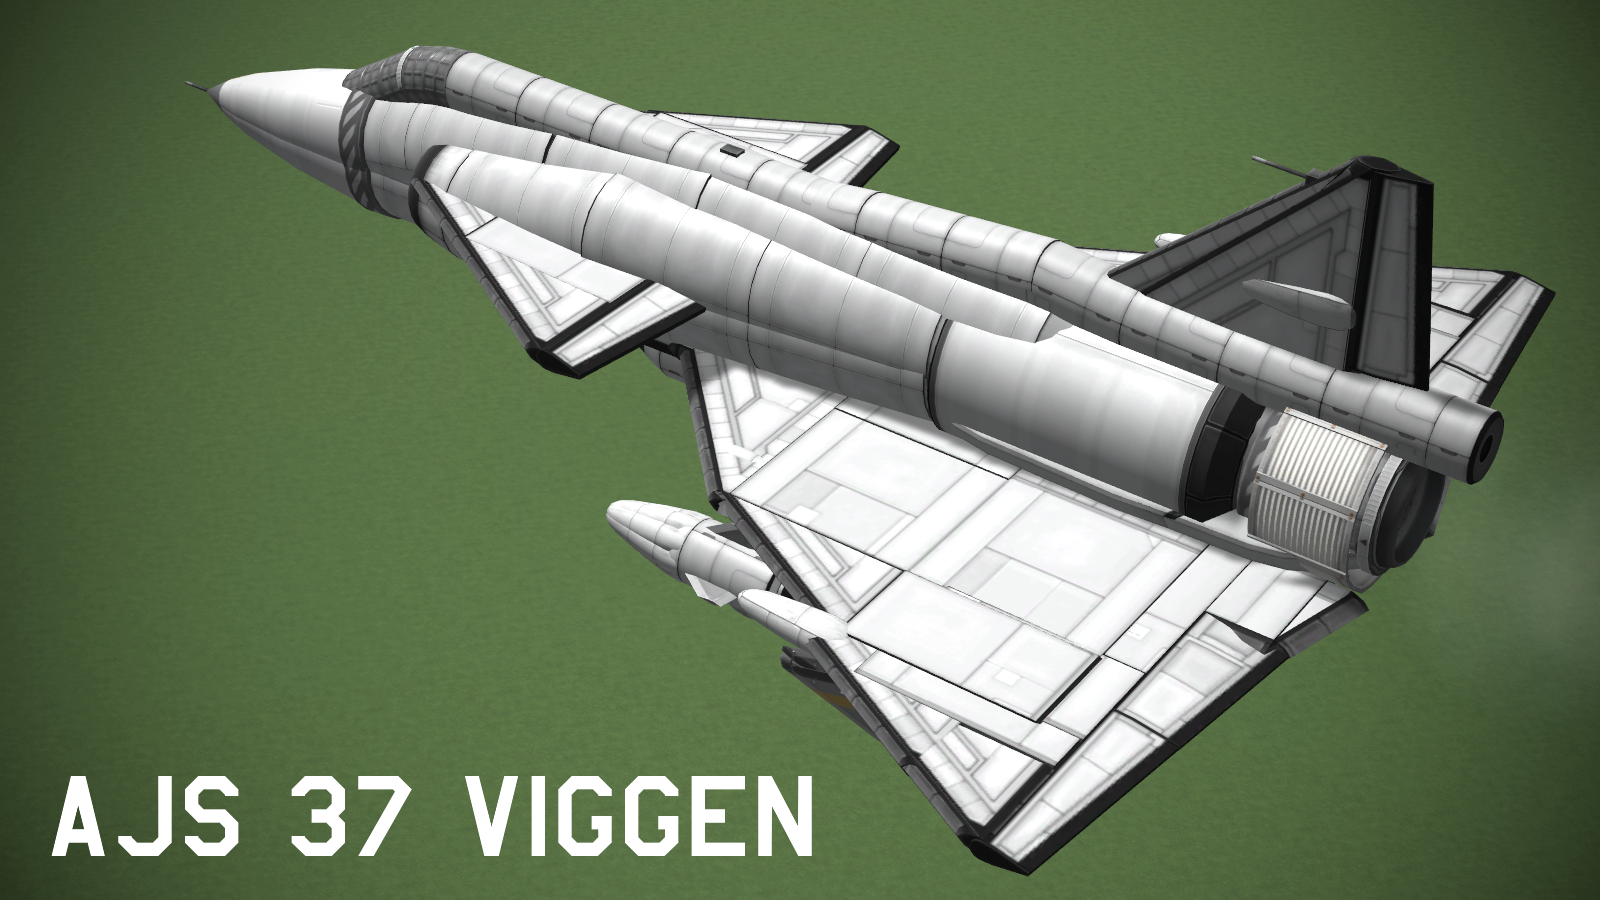 STOCK 1:1 Saab AJS 37 Viggen Spacecraft Exchange Space Program Forums